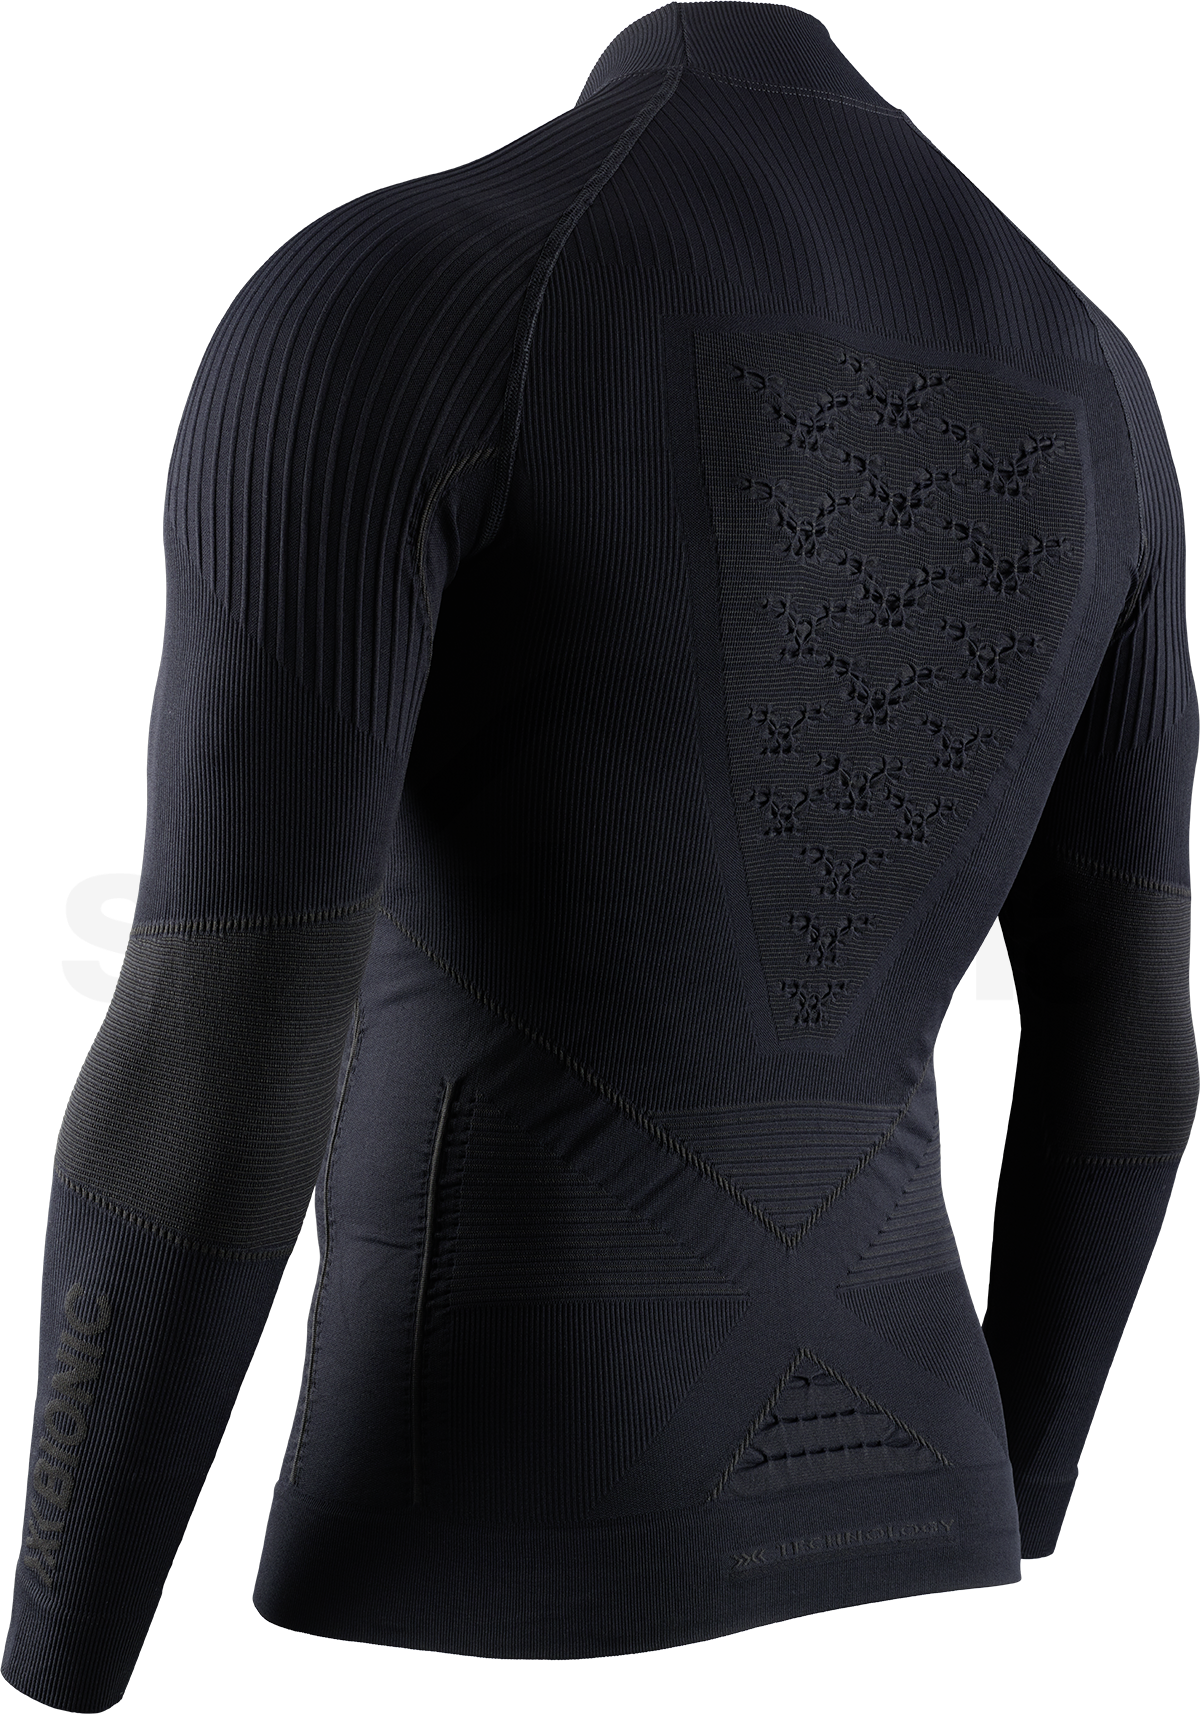 Tričko X-Bionic Energy Accumulator 4.0 shirt Turtle Neck LG SL M - černá